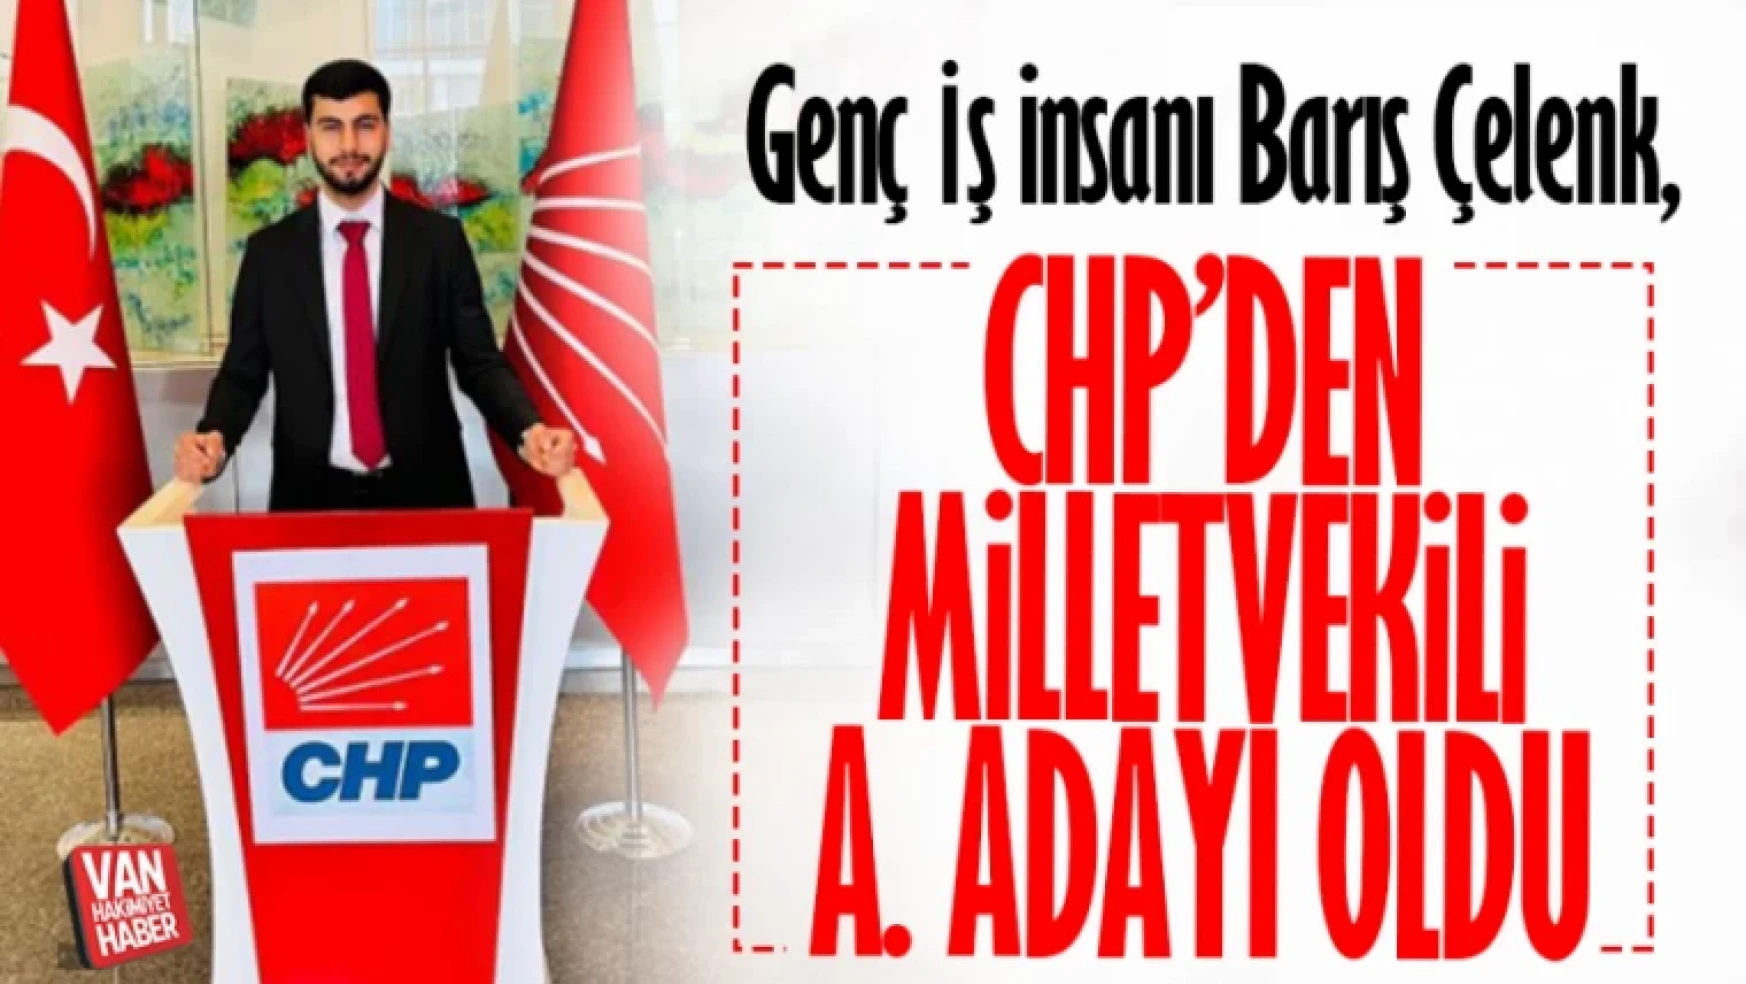 Genç İş insanı Barış Çelenk, CHP Van milletvekili aday adaylık başvurusunda bulundu